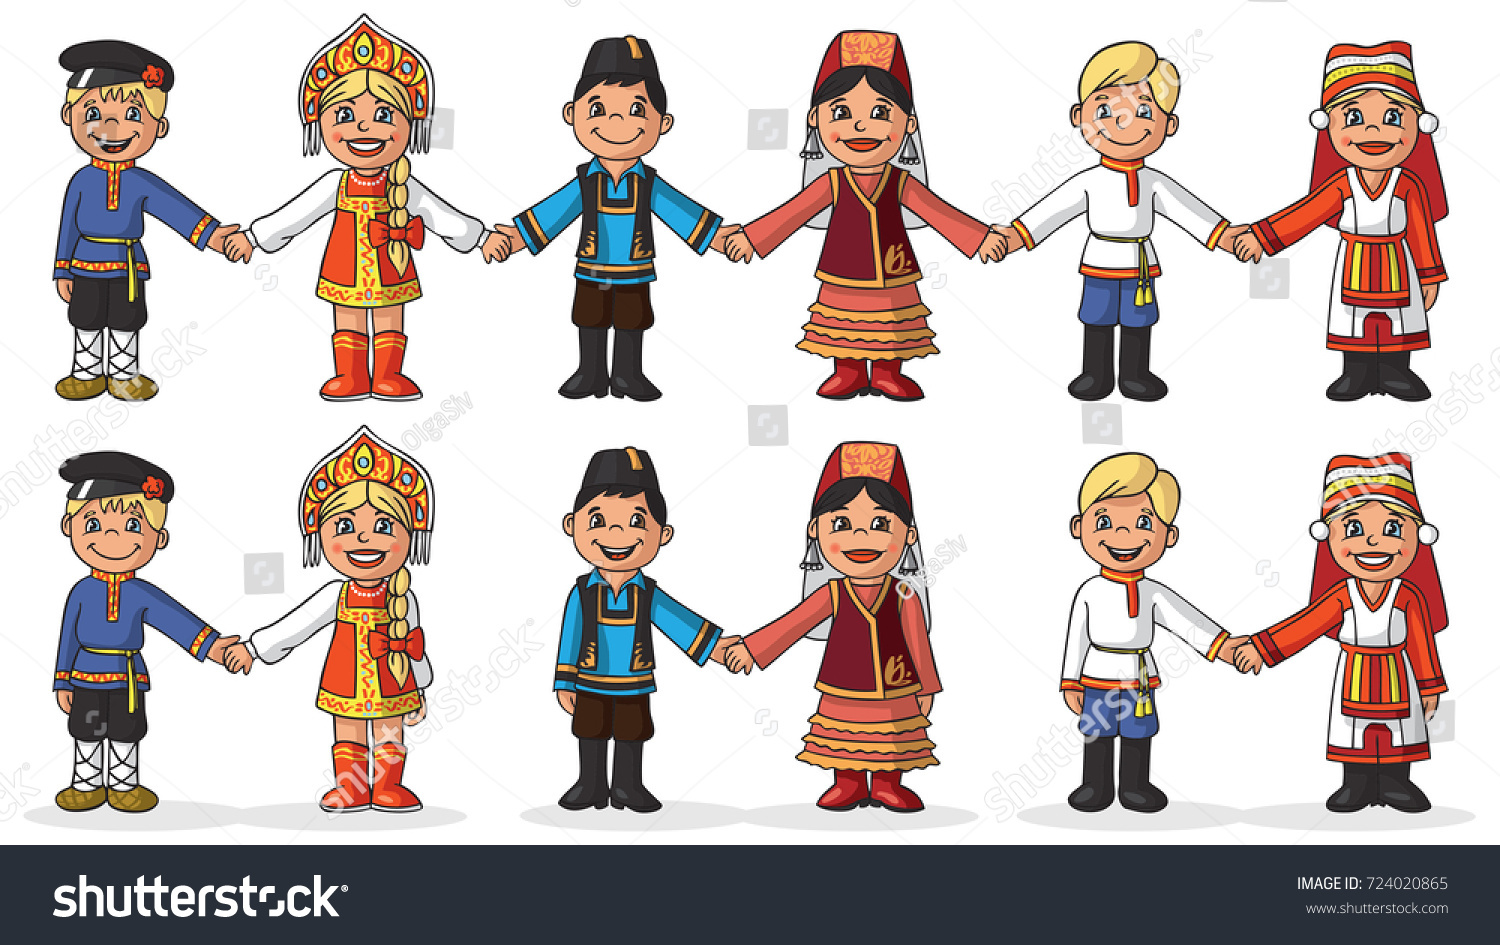 народы казахстана картинки для детей